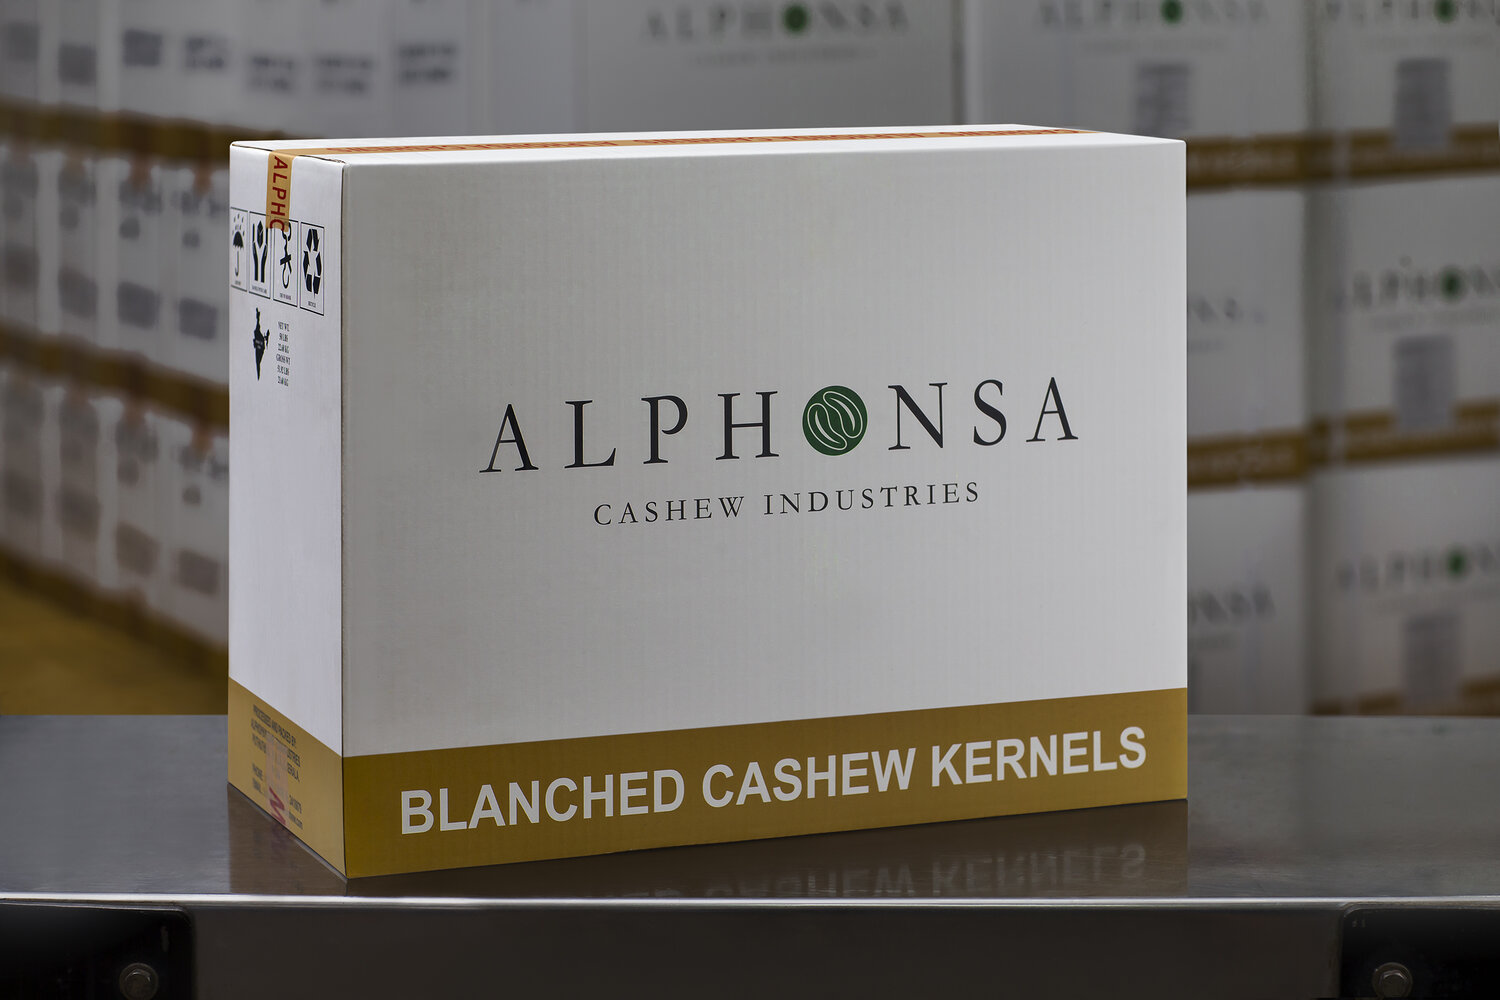 alphonsa cashew industries